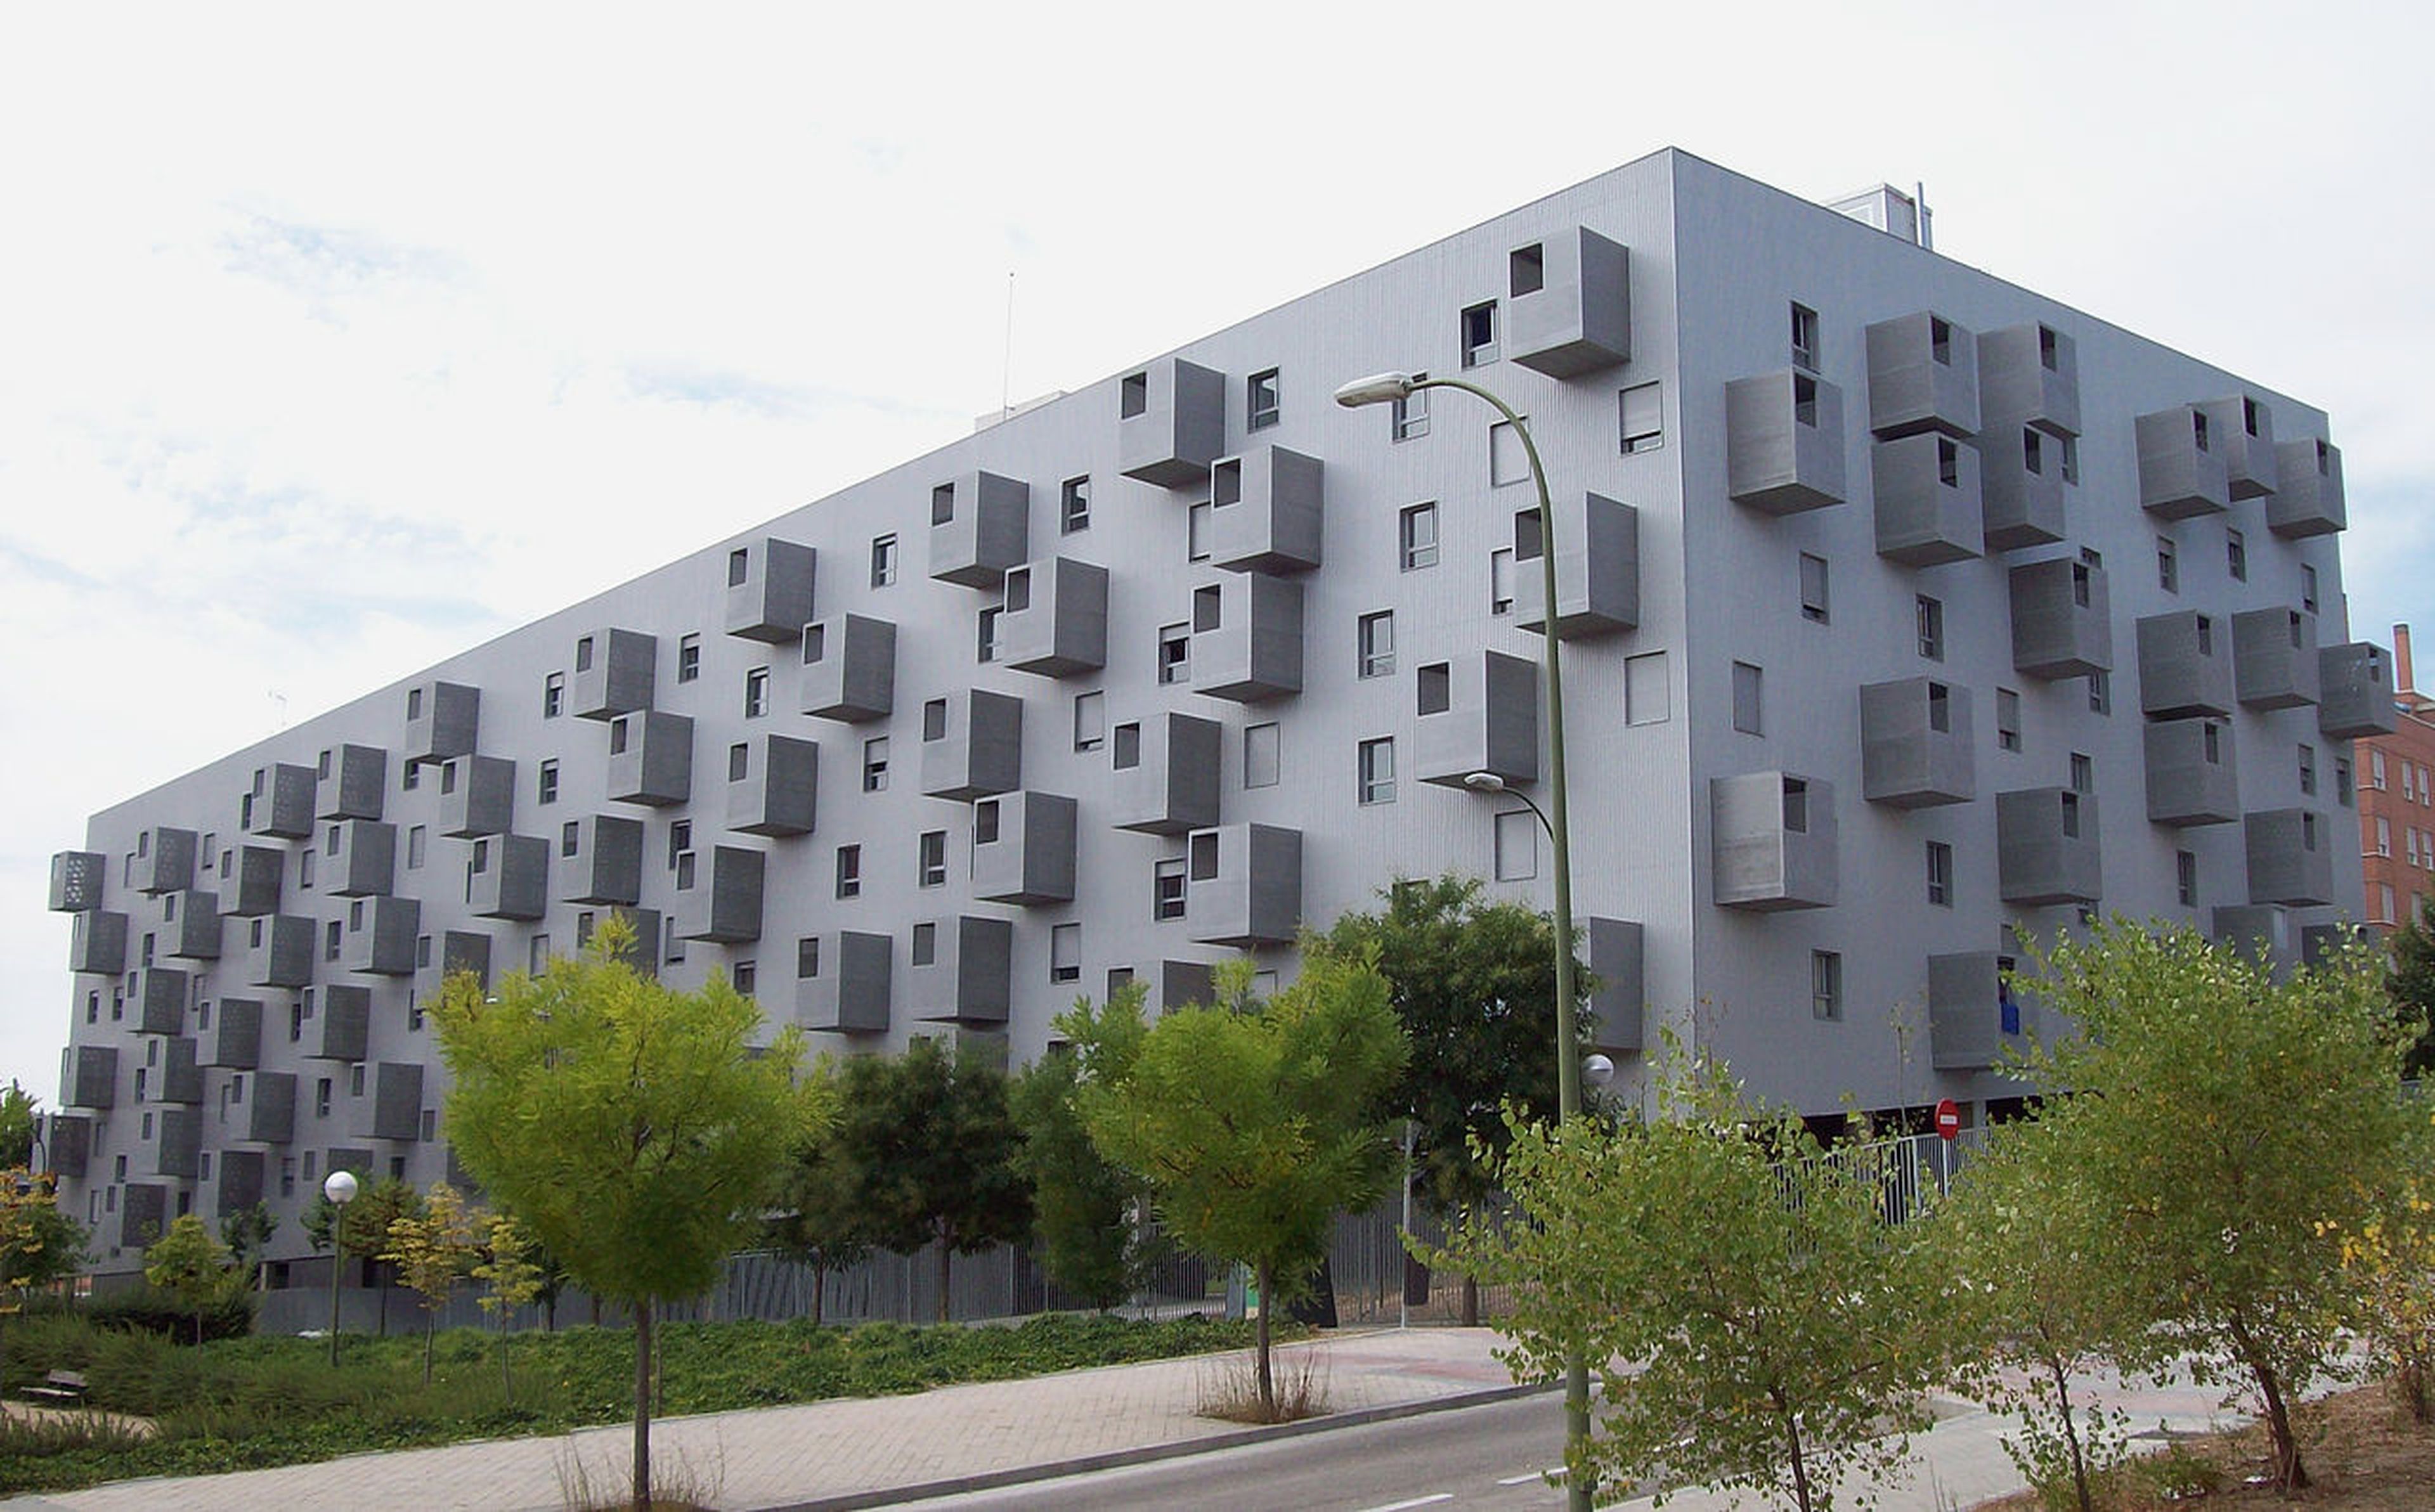 Edificio de Carabanchel, Madrid